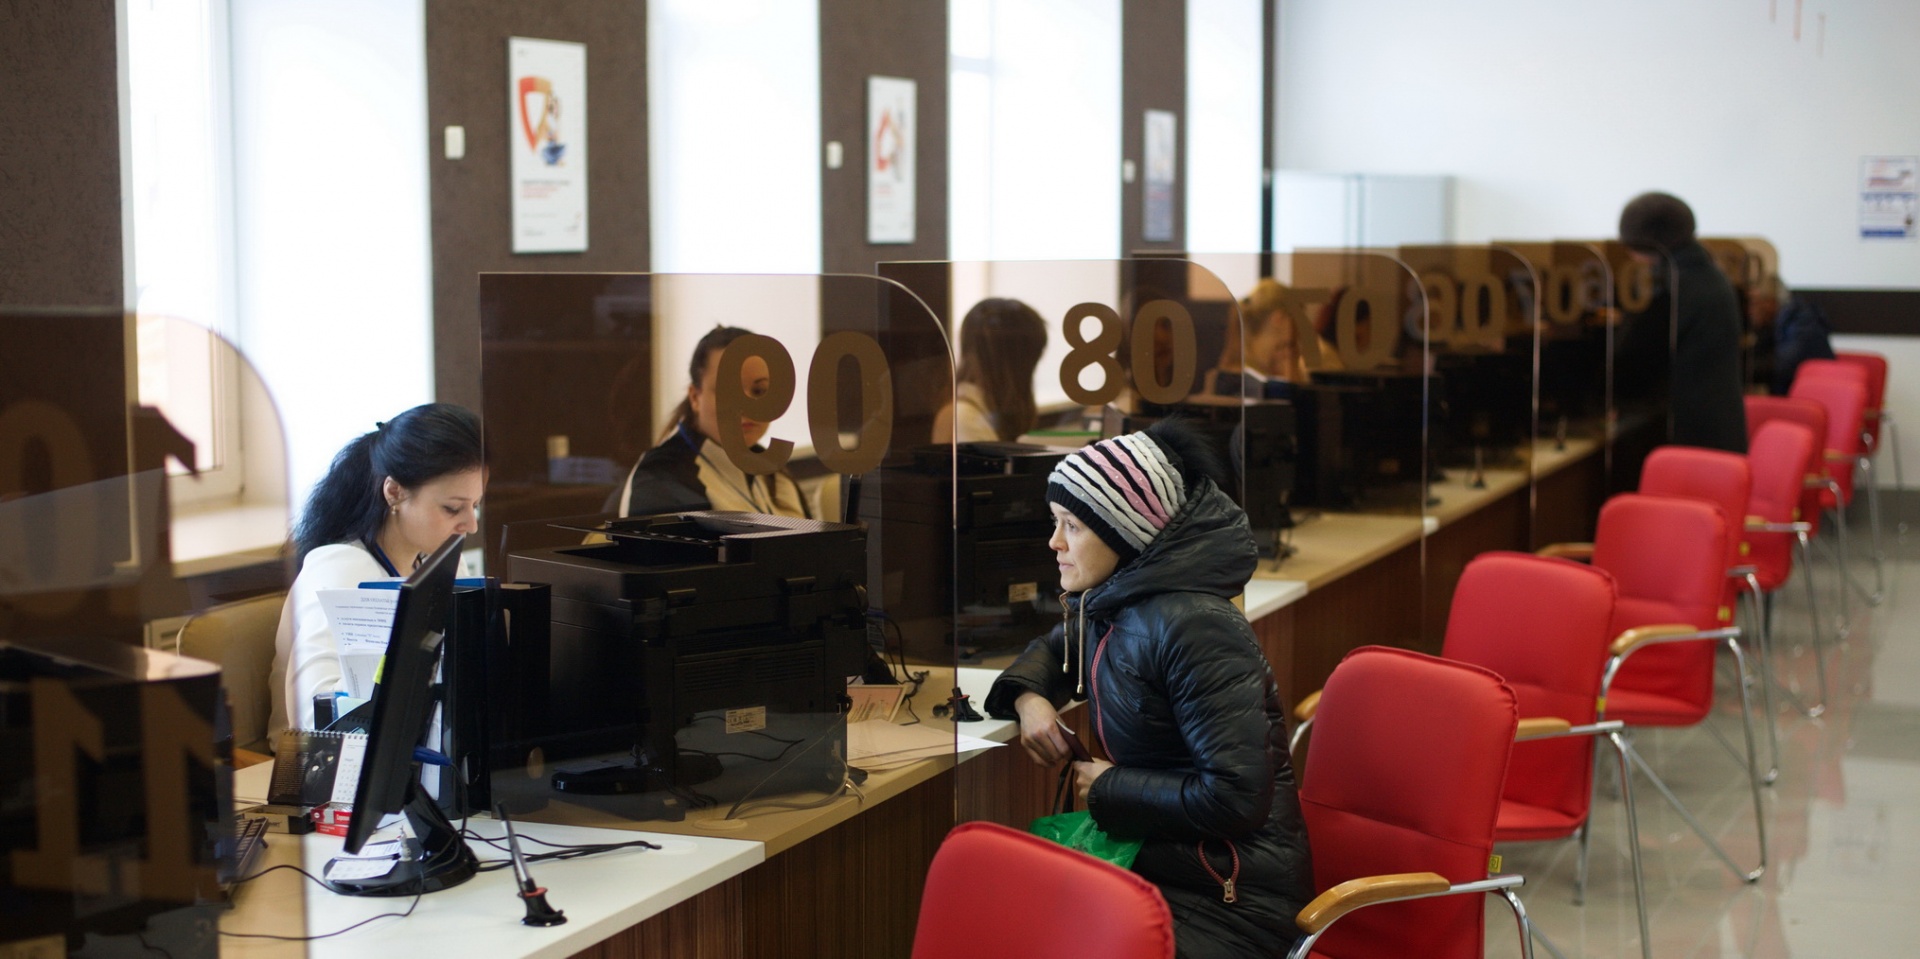 Жители Ивановской области назвали голосового помощника в МФЦ Ваней